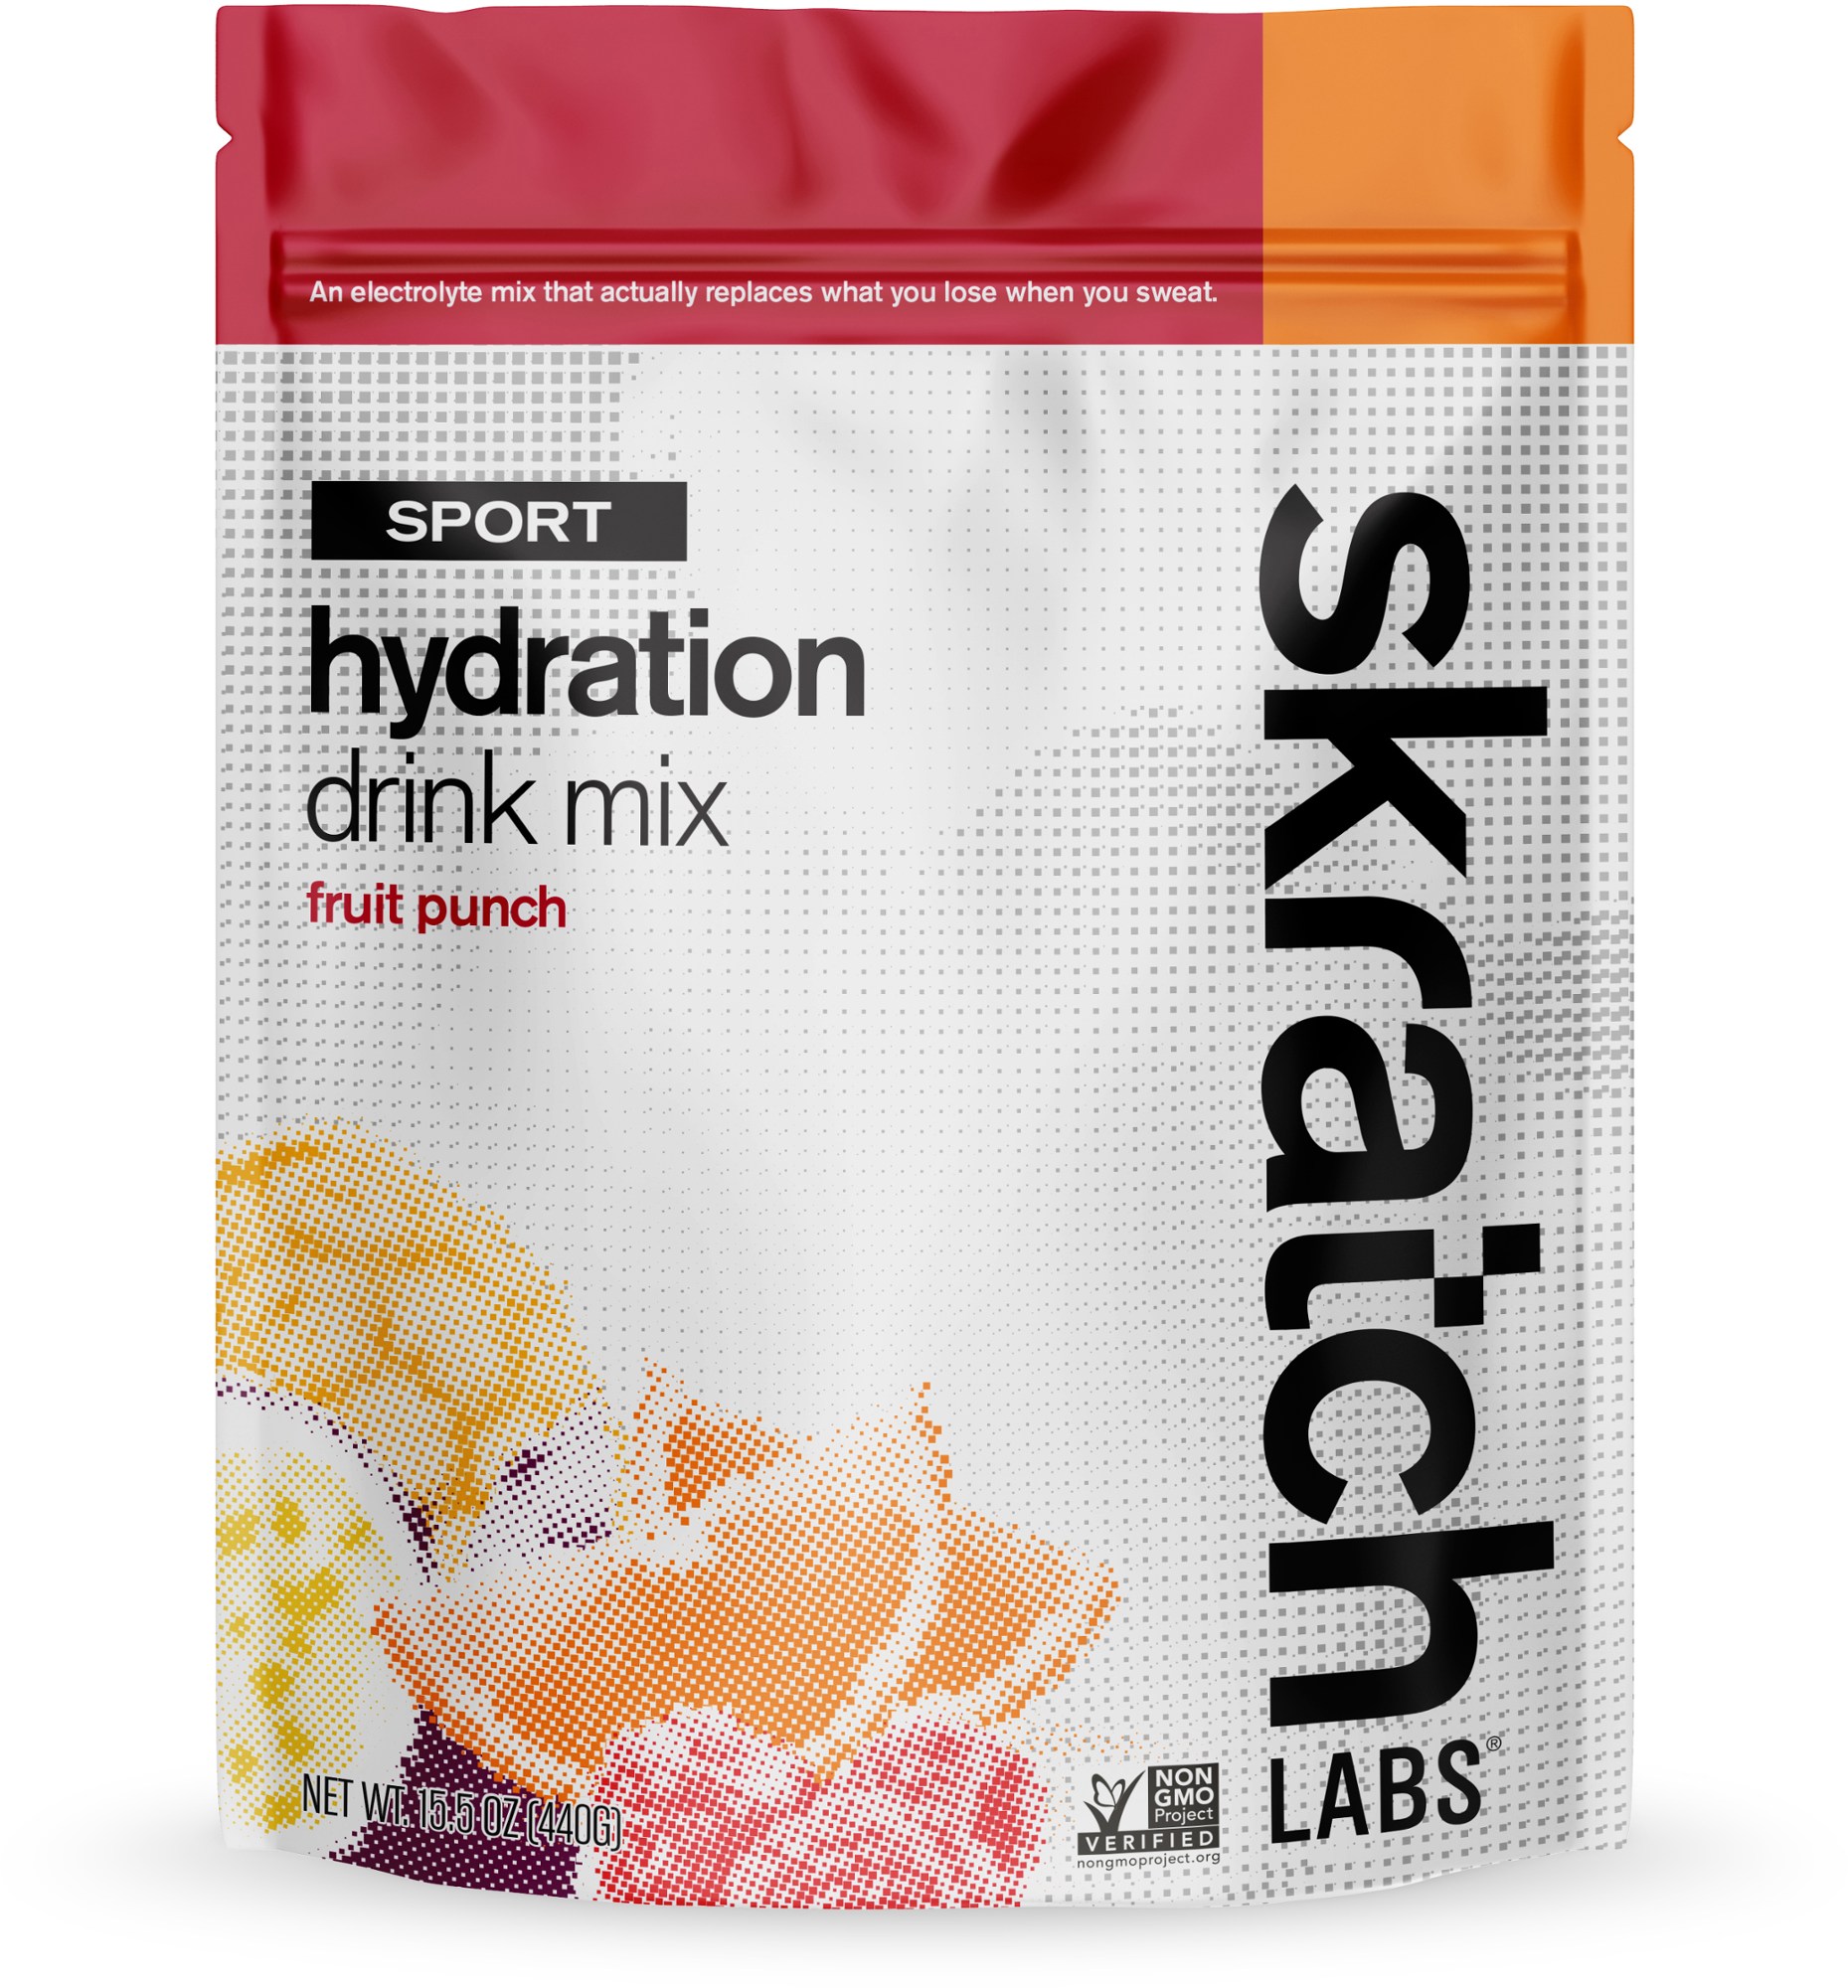 Смесь для спортивных гидратационных напитков - 20 порций Skratch Labs смесь электролитов force factor liquid labs energy для быстрого увлажнения манго и маргарита 20 стик пакетов по 8 г